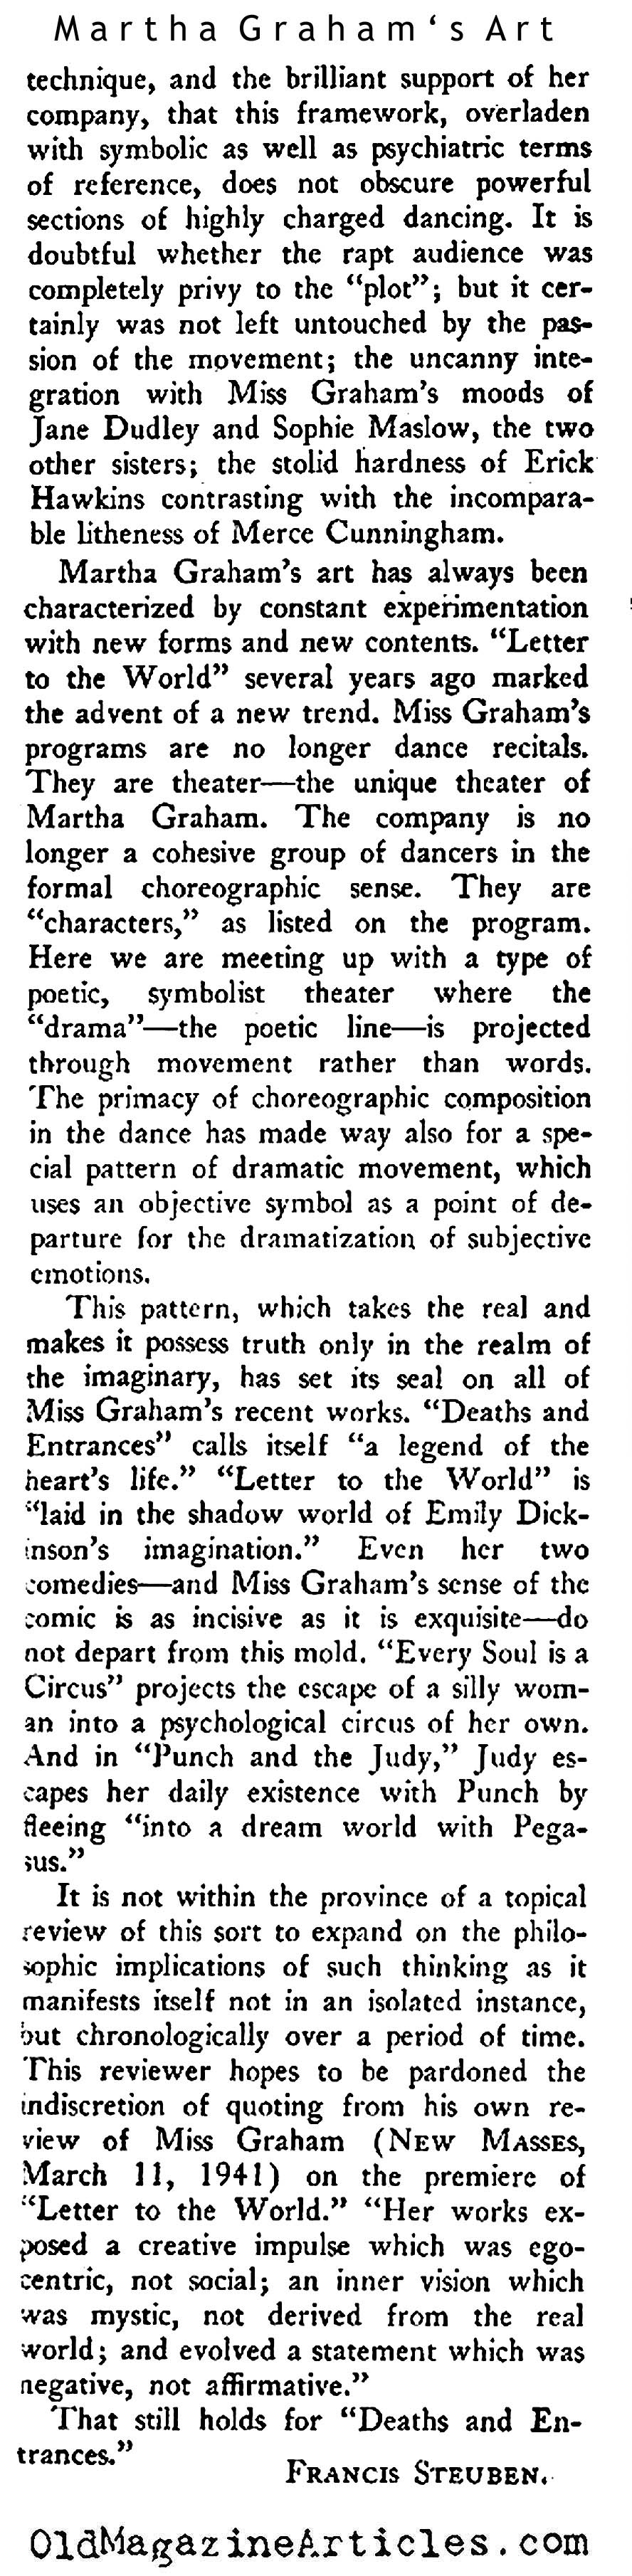 Martha Graham's Art (New Masses, 1944)